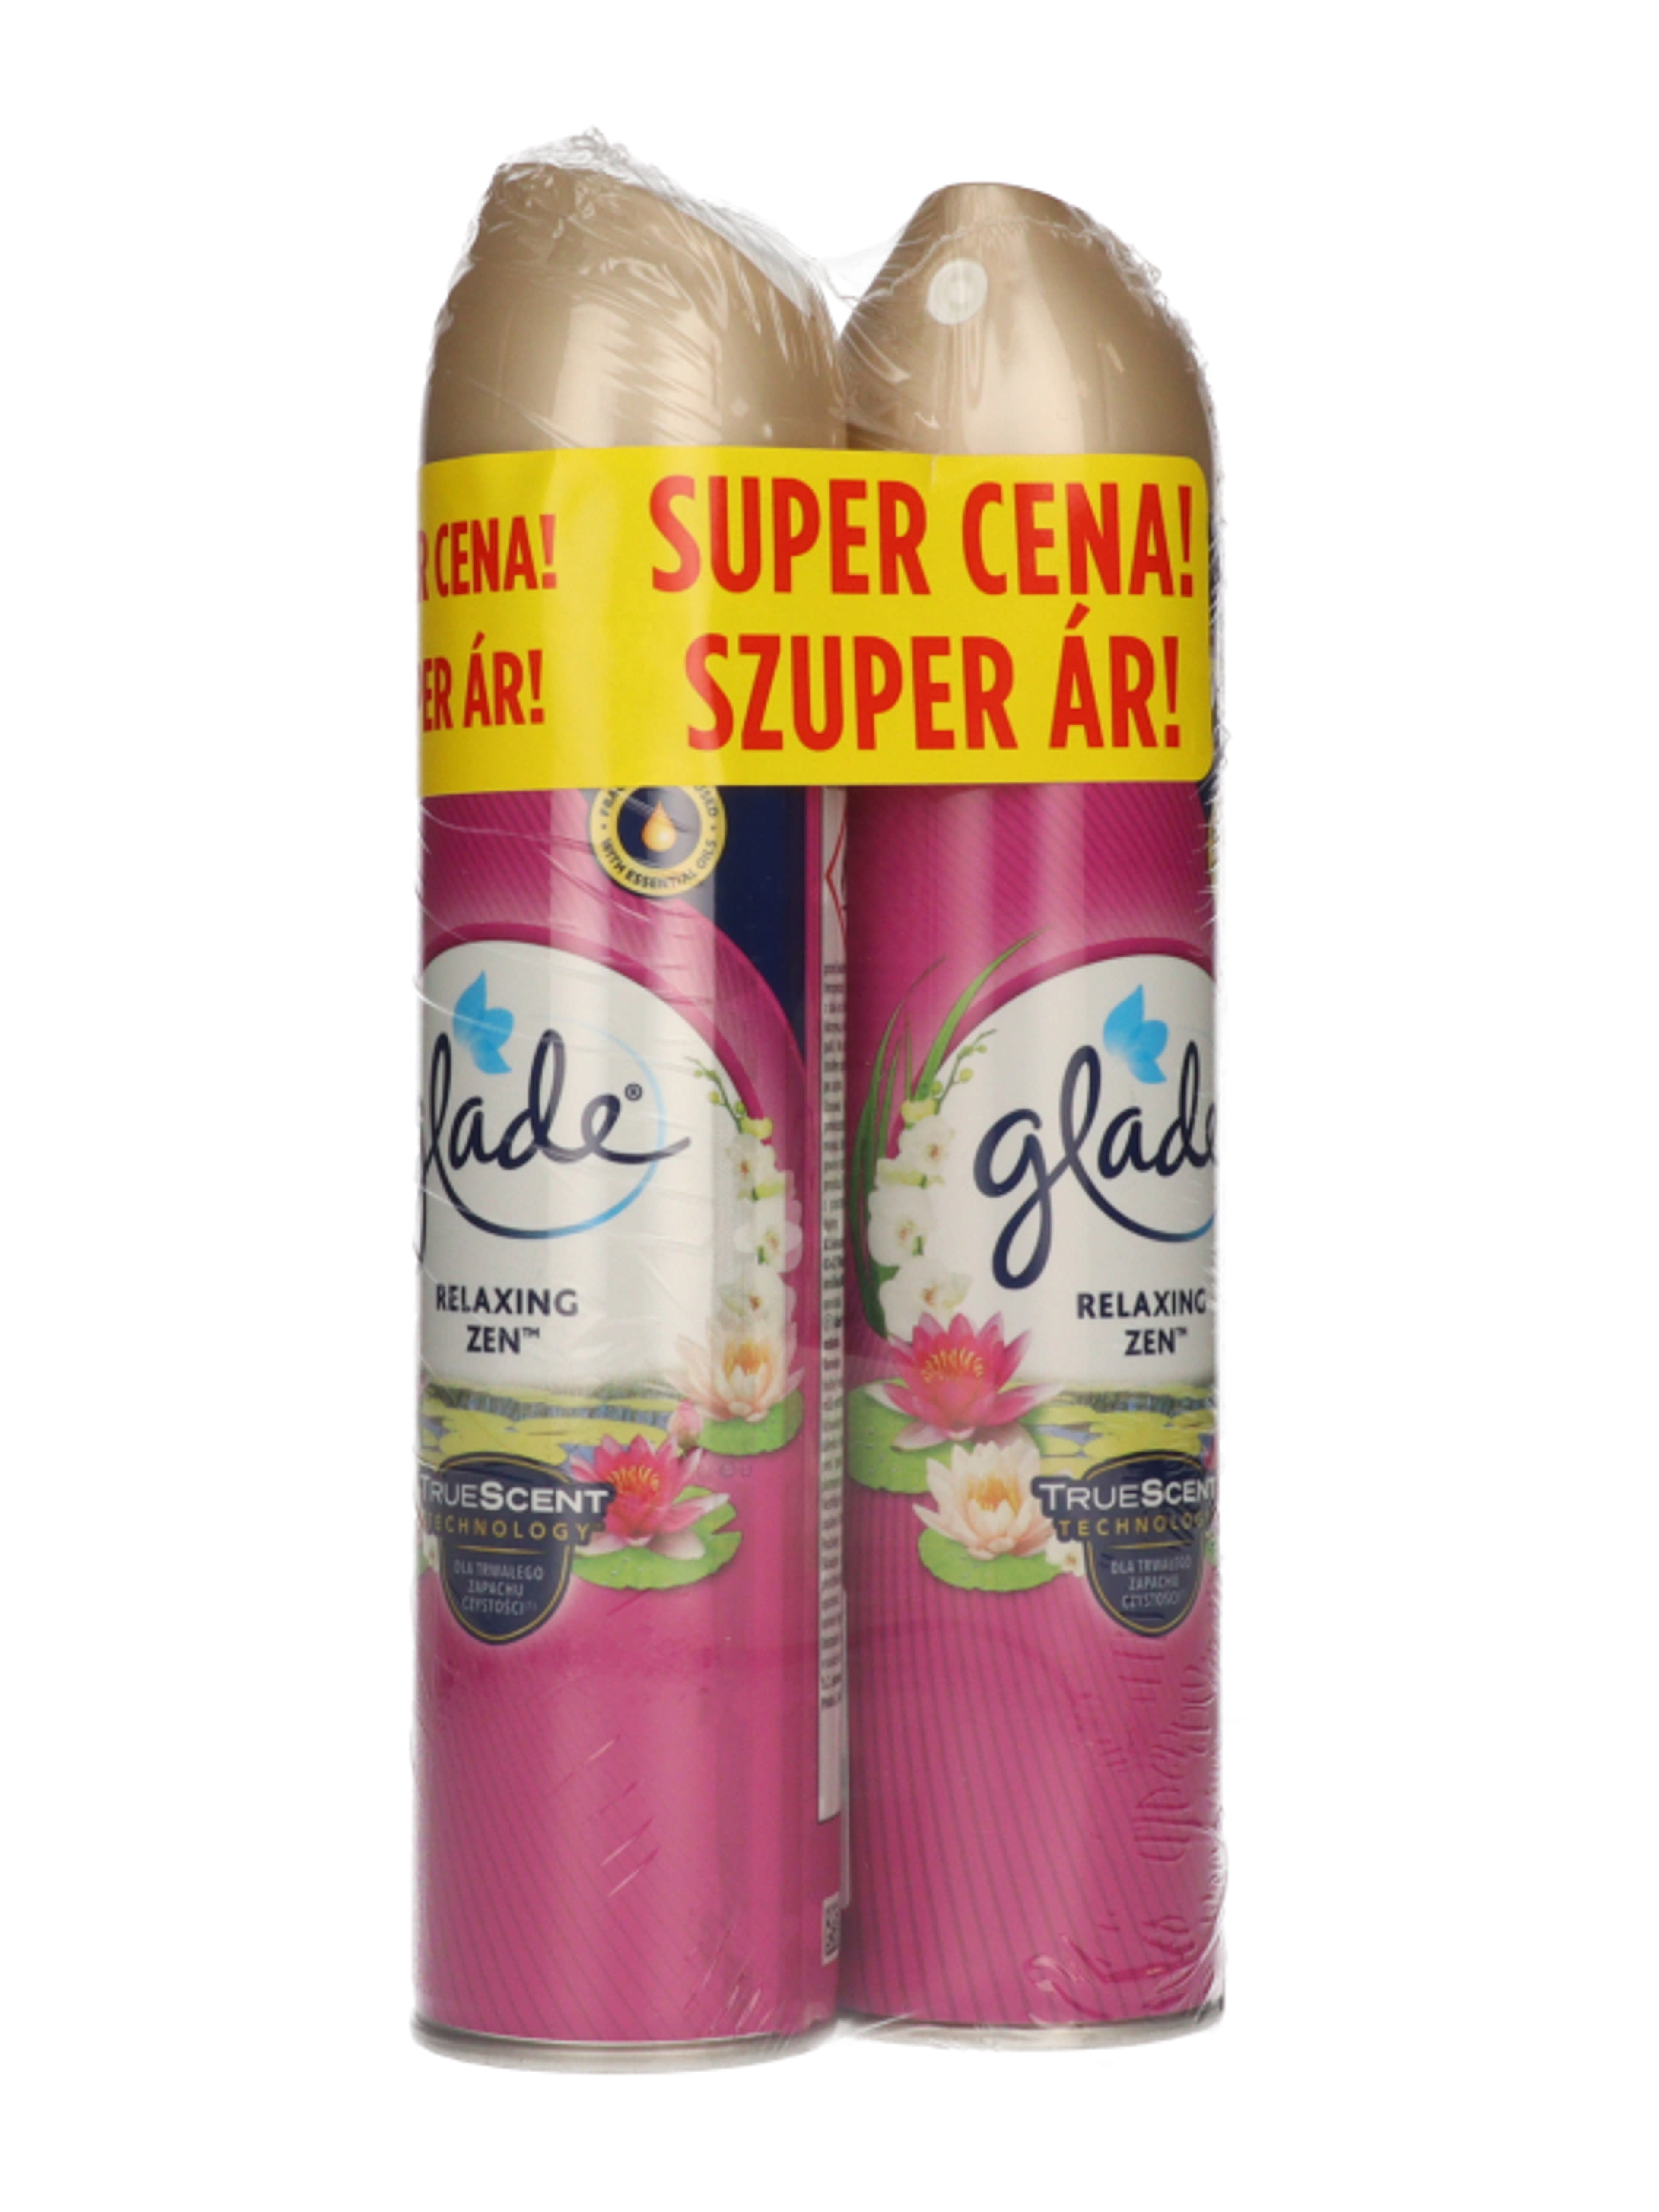 Glade Japán kert duo pack (2x300) - 600 ml